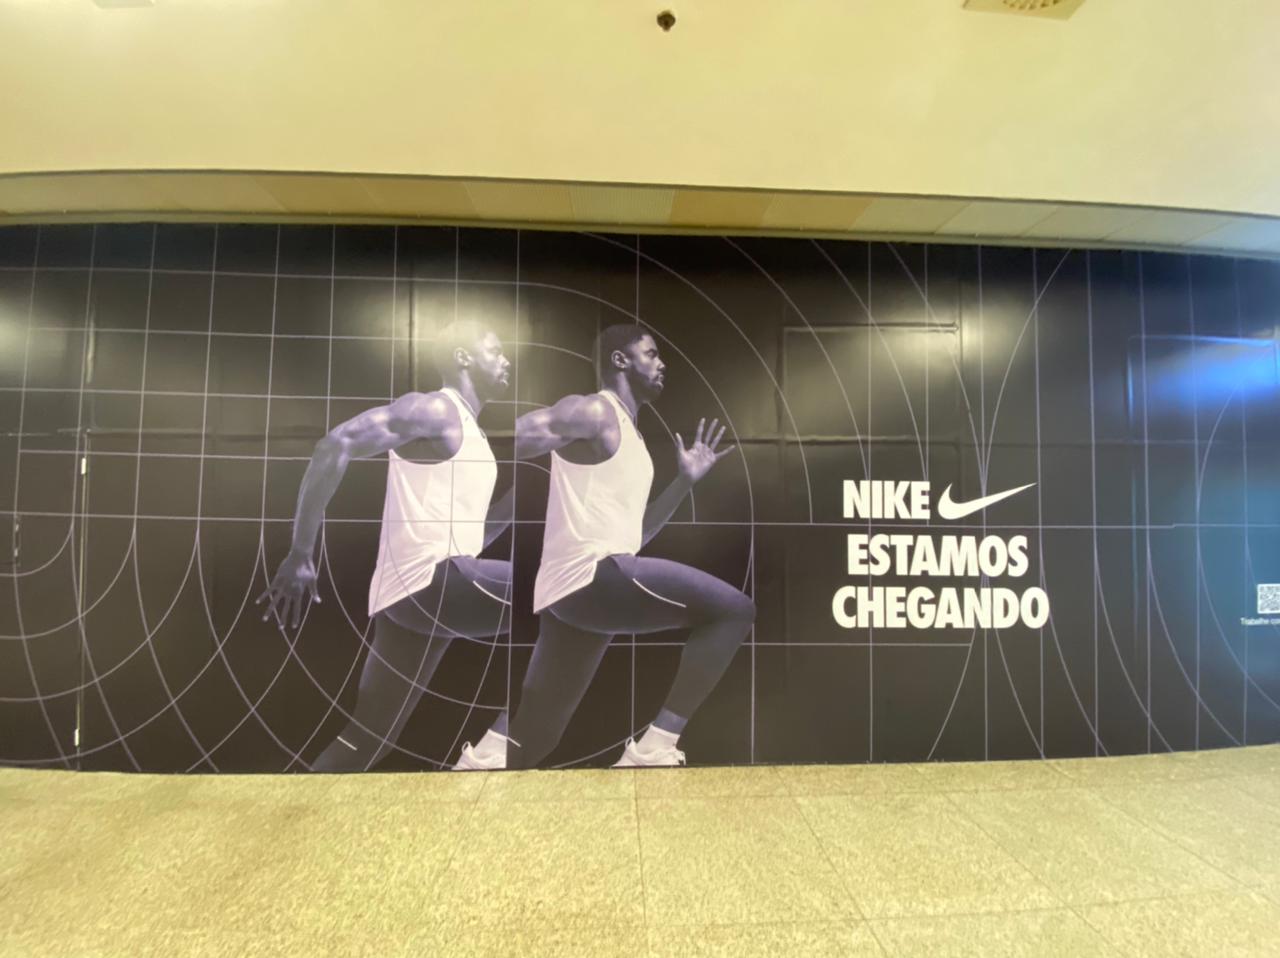 Nike expande e abrirá nova loja em Salvador; saiba